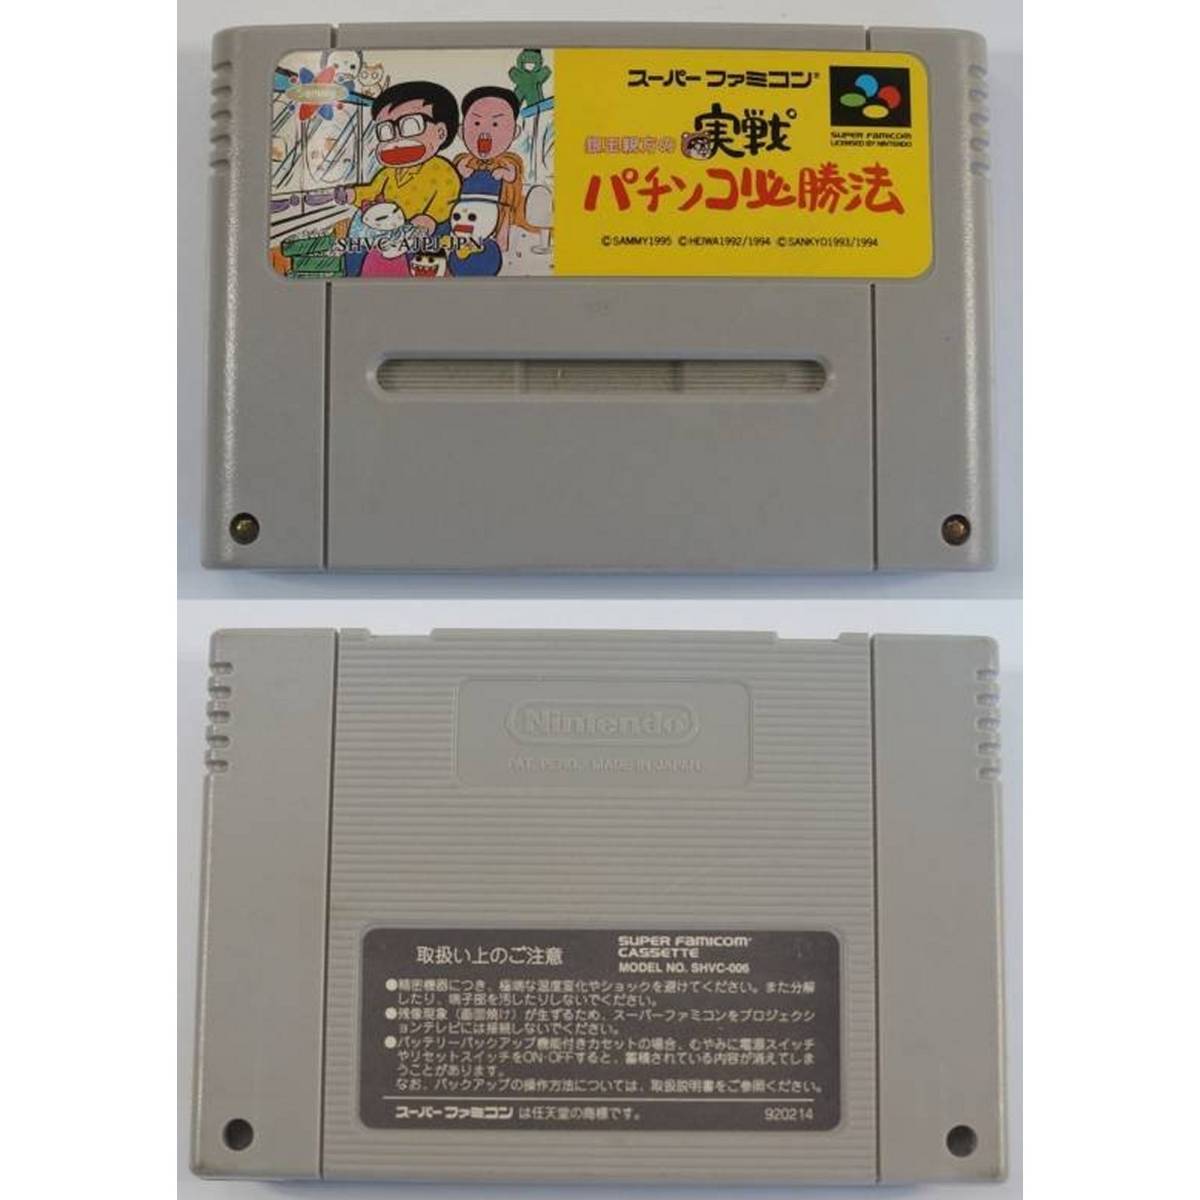  серебряный шар родители person. реальный битва патинко обязательно . закон SHVC-AJPJ Super Famicom игра 